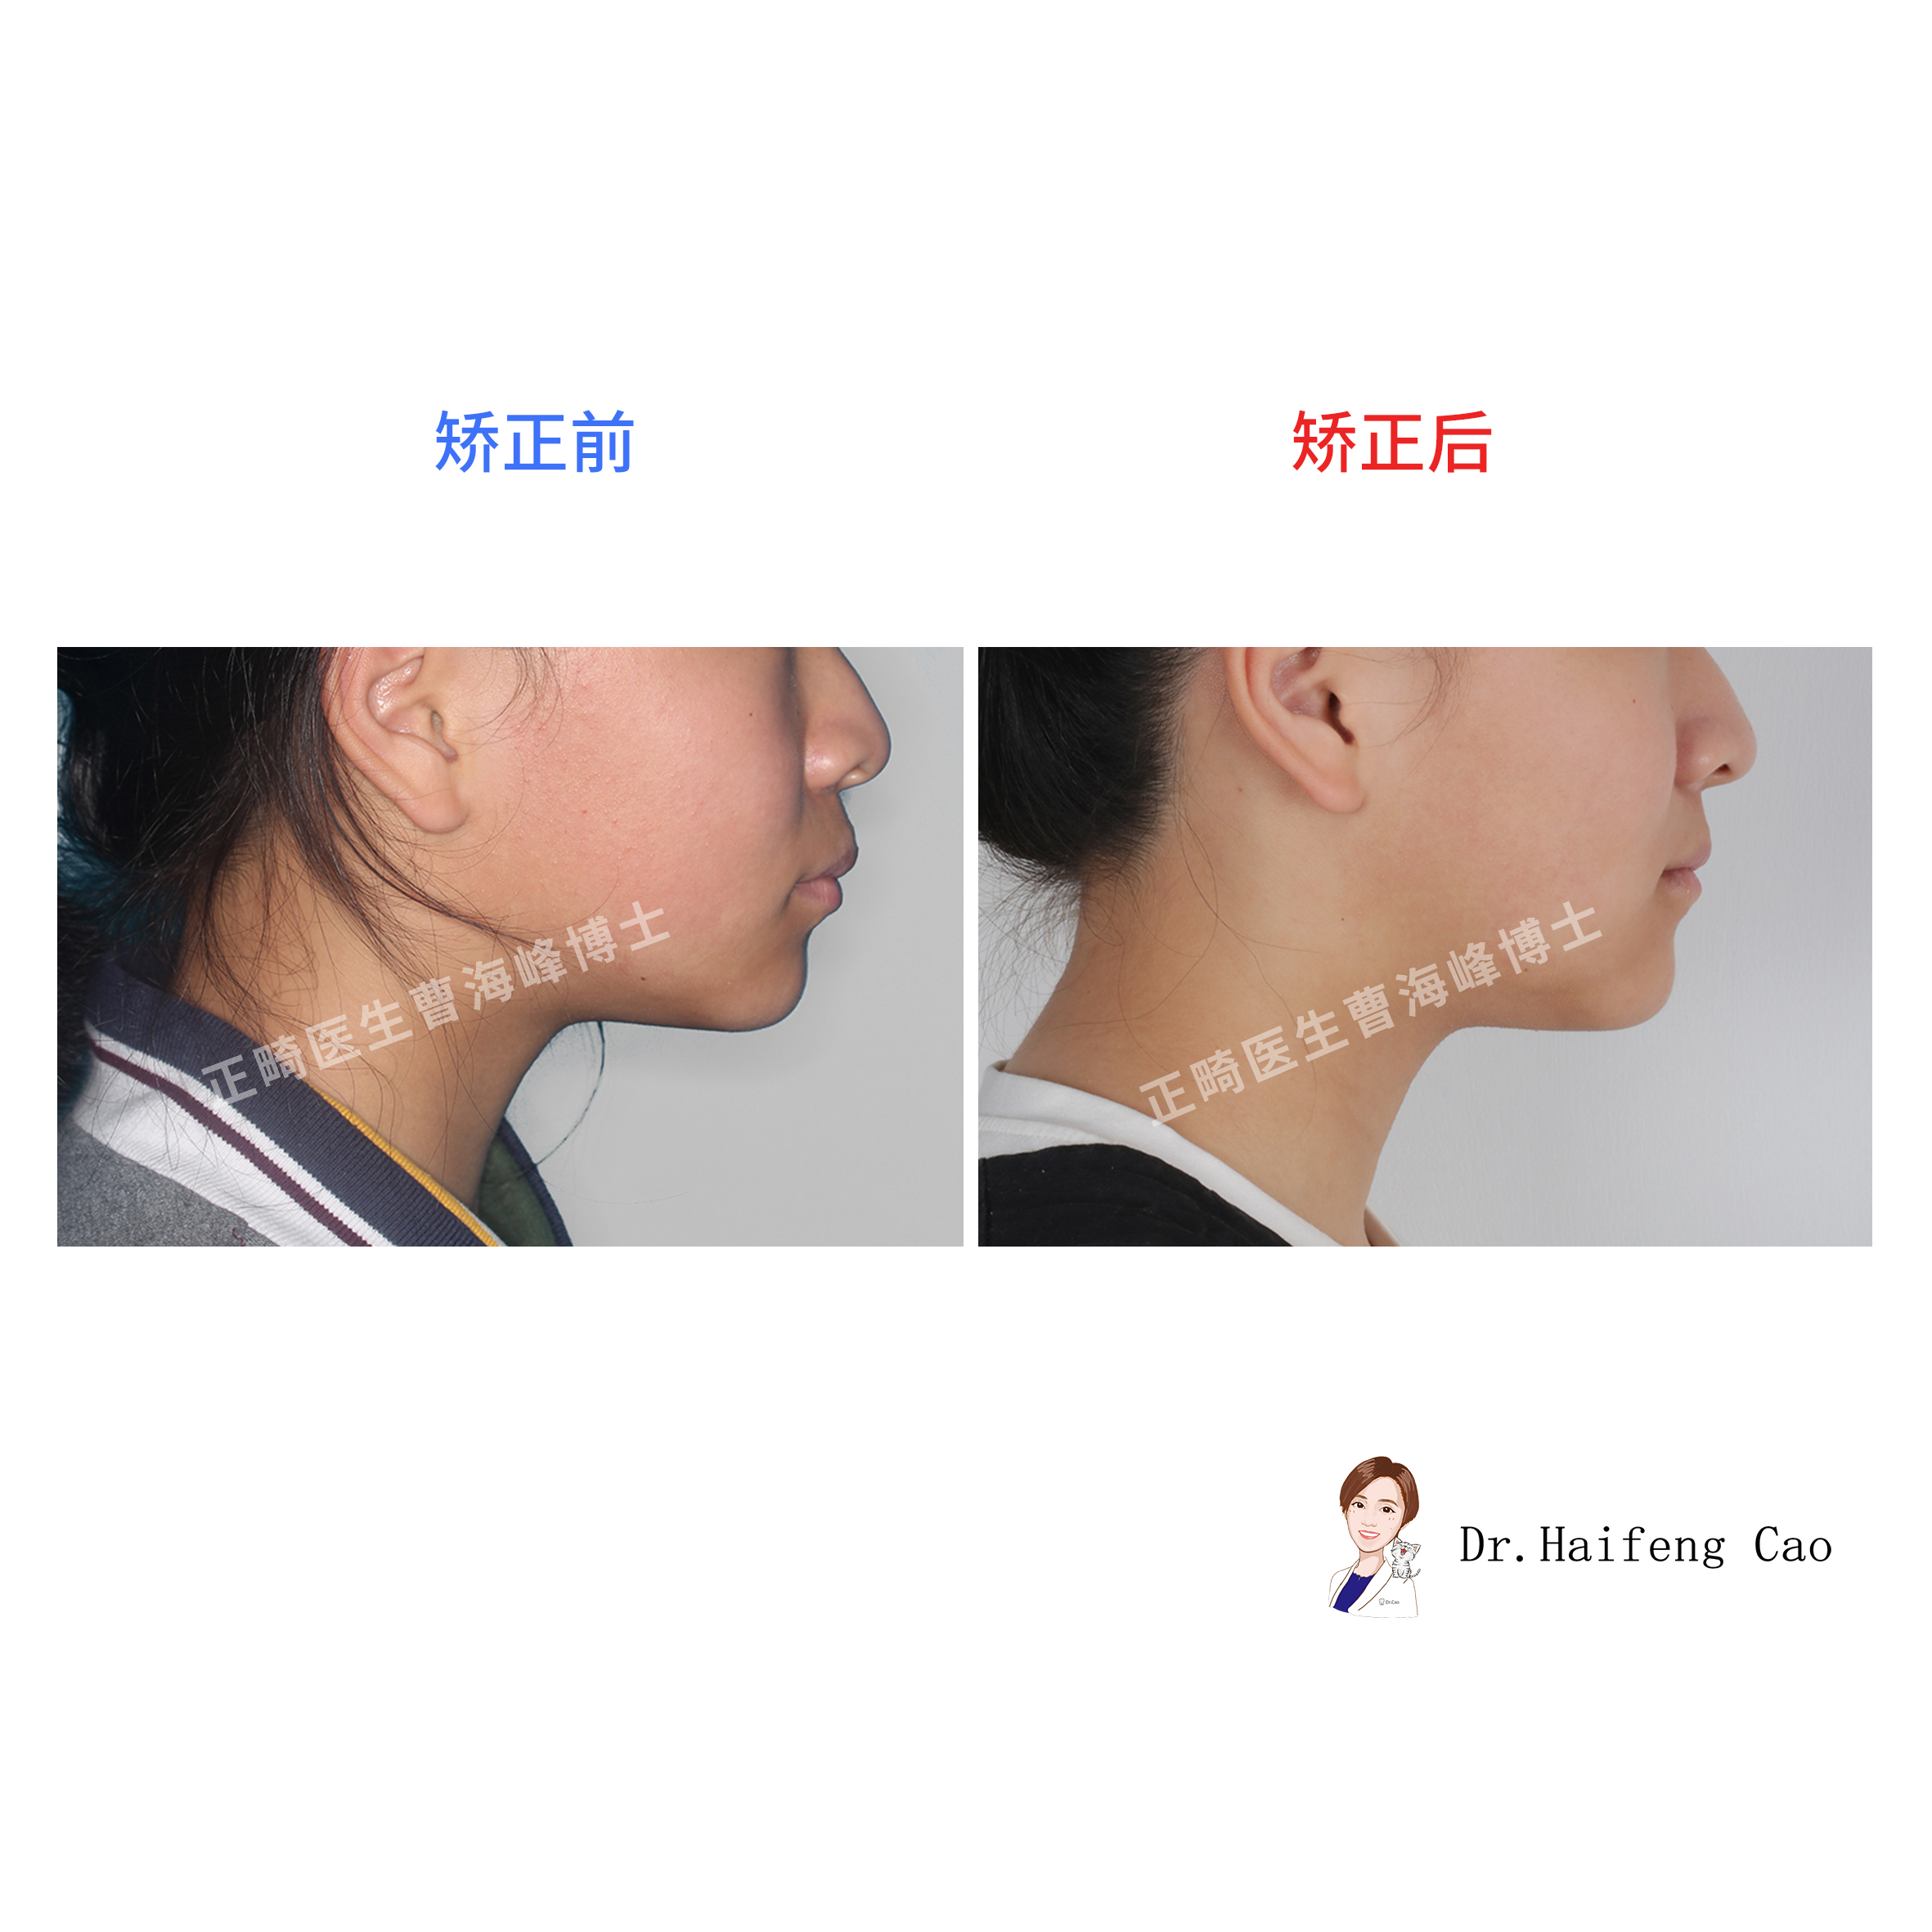 我院口腔颌面外科基于3D打印技术完成下颌骨精密重建成功填补省内空白-哈尔滨医科大学口腔医学院